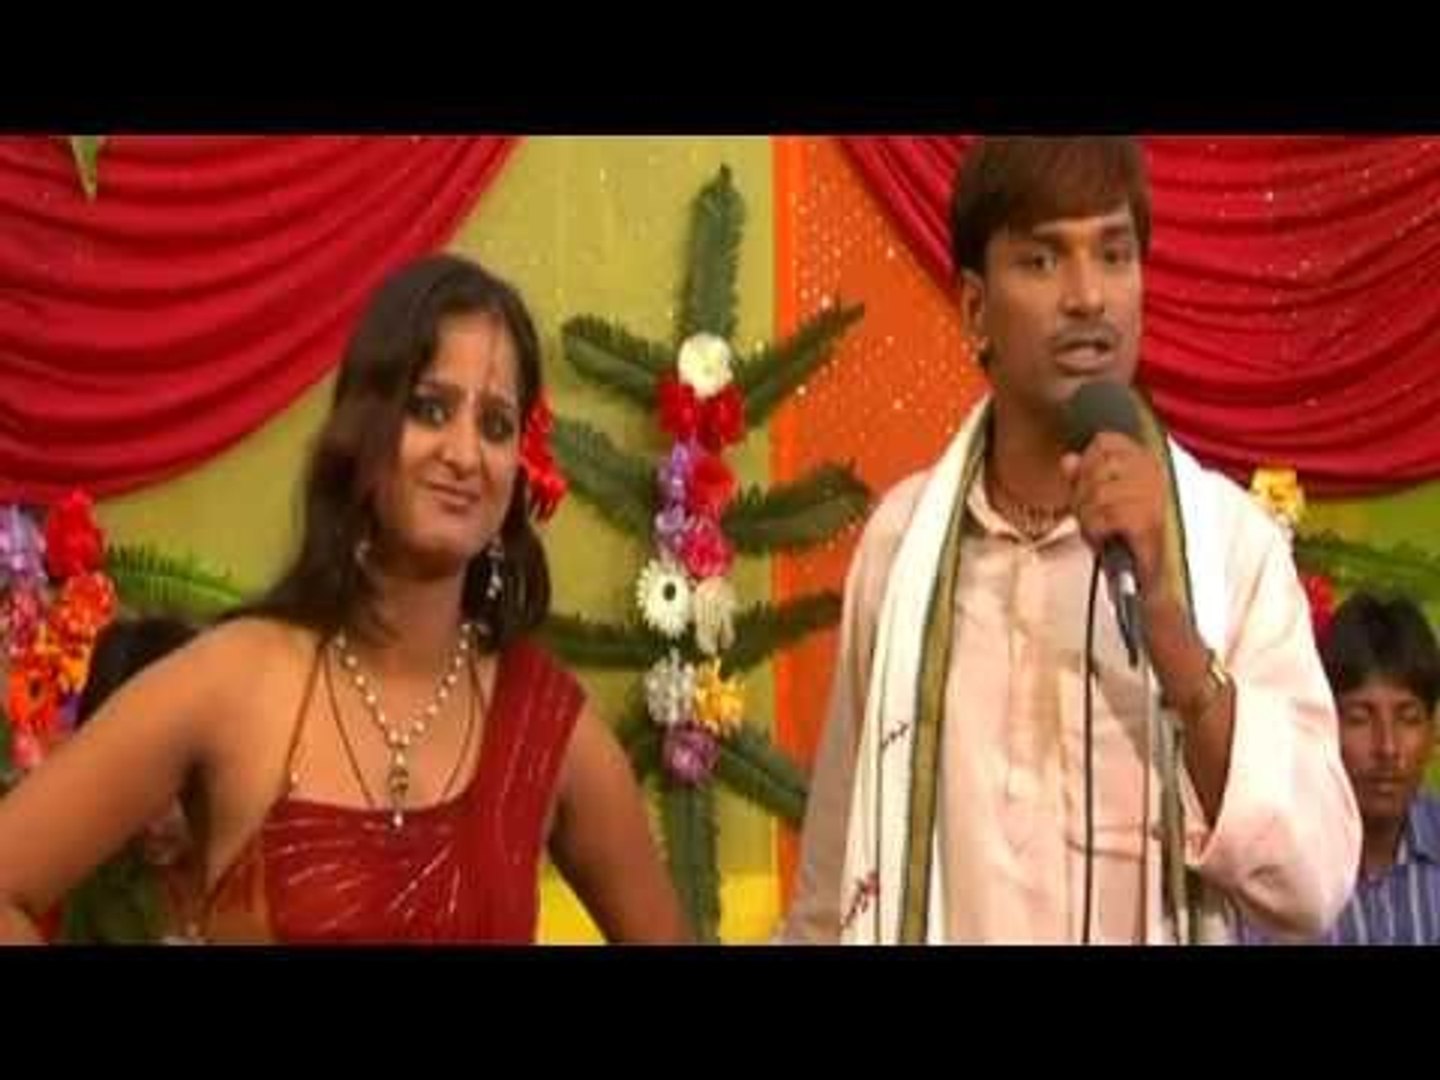 1440px x 1080px - HD à¤ªà¥ˆà¤¸à¤¾ à¤ªà¤° à¤ªà¥à¤¯à¤¾à¤° à¤¦à¥‡à¤¬à¥‚ à¤•à¤¾ - Paisha Par Payar Debu Ka | Bhojpuri Hot & Sexy  Song 2014 - video Dailymotion